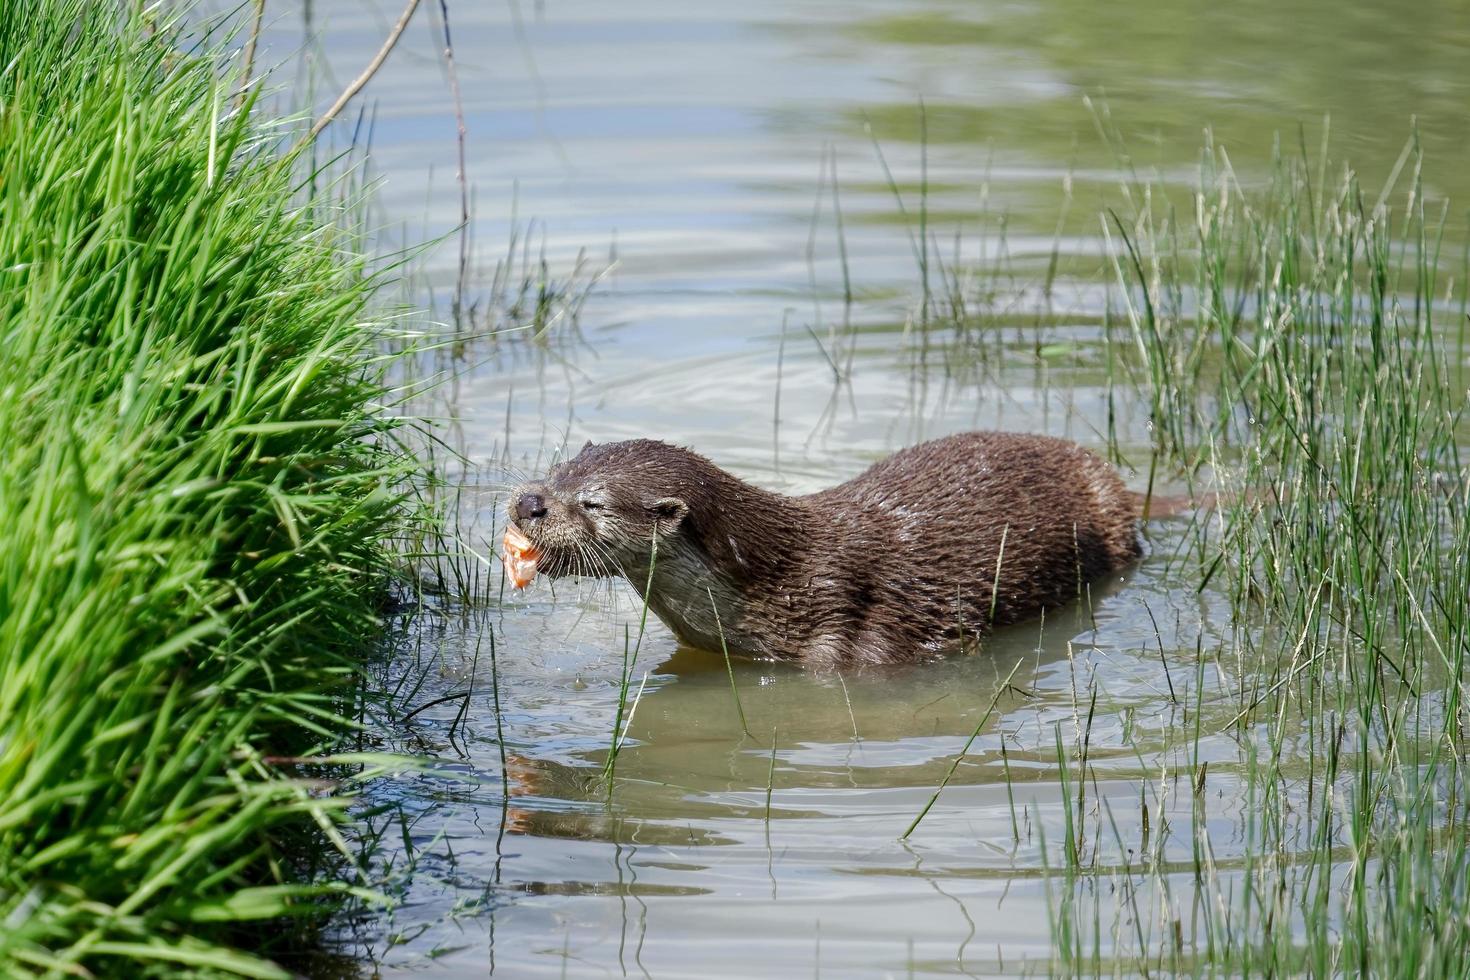 Eurasian Otter in natural habitat photo